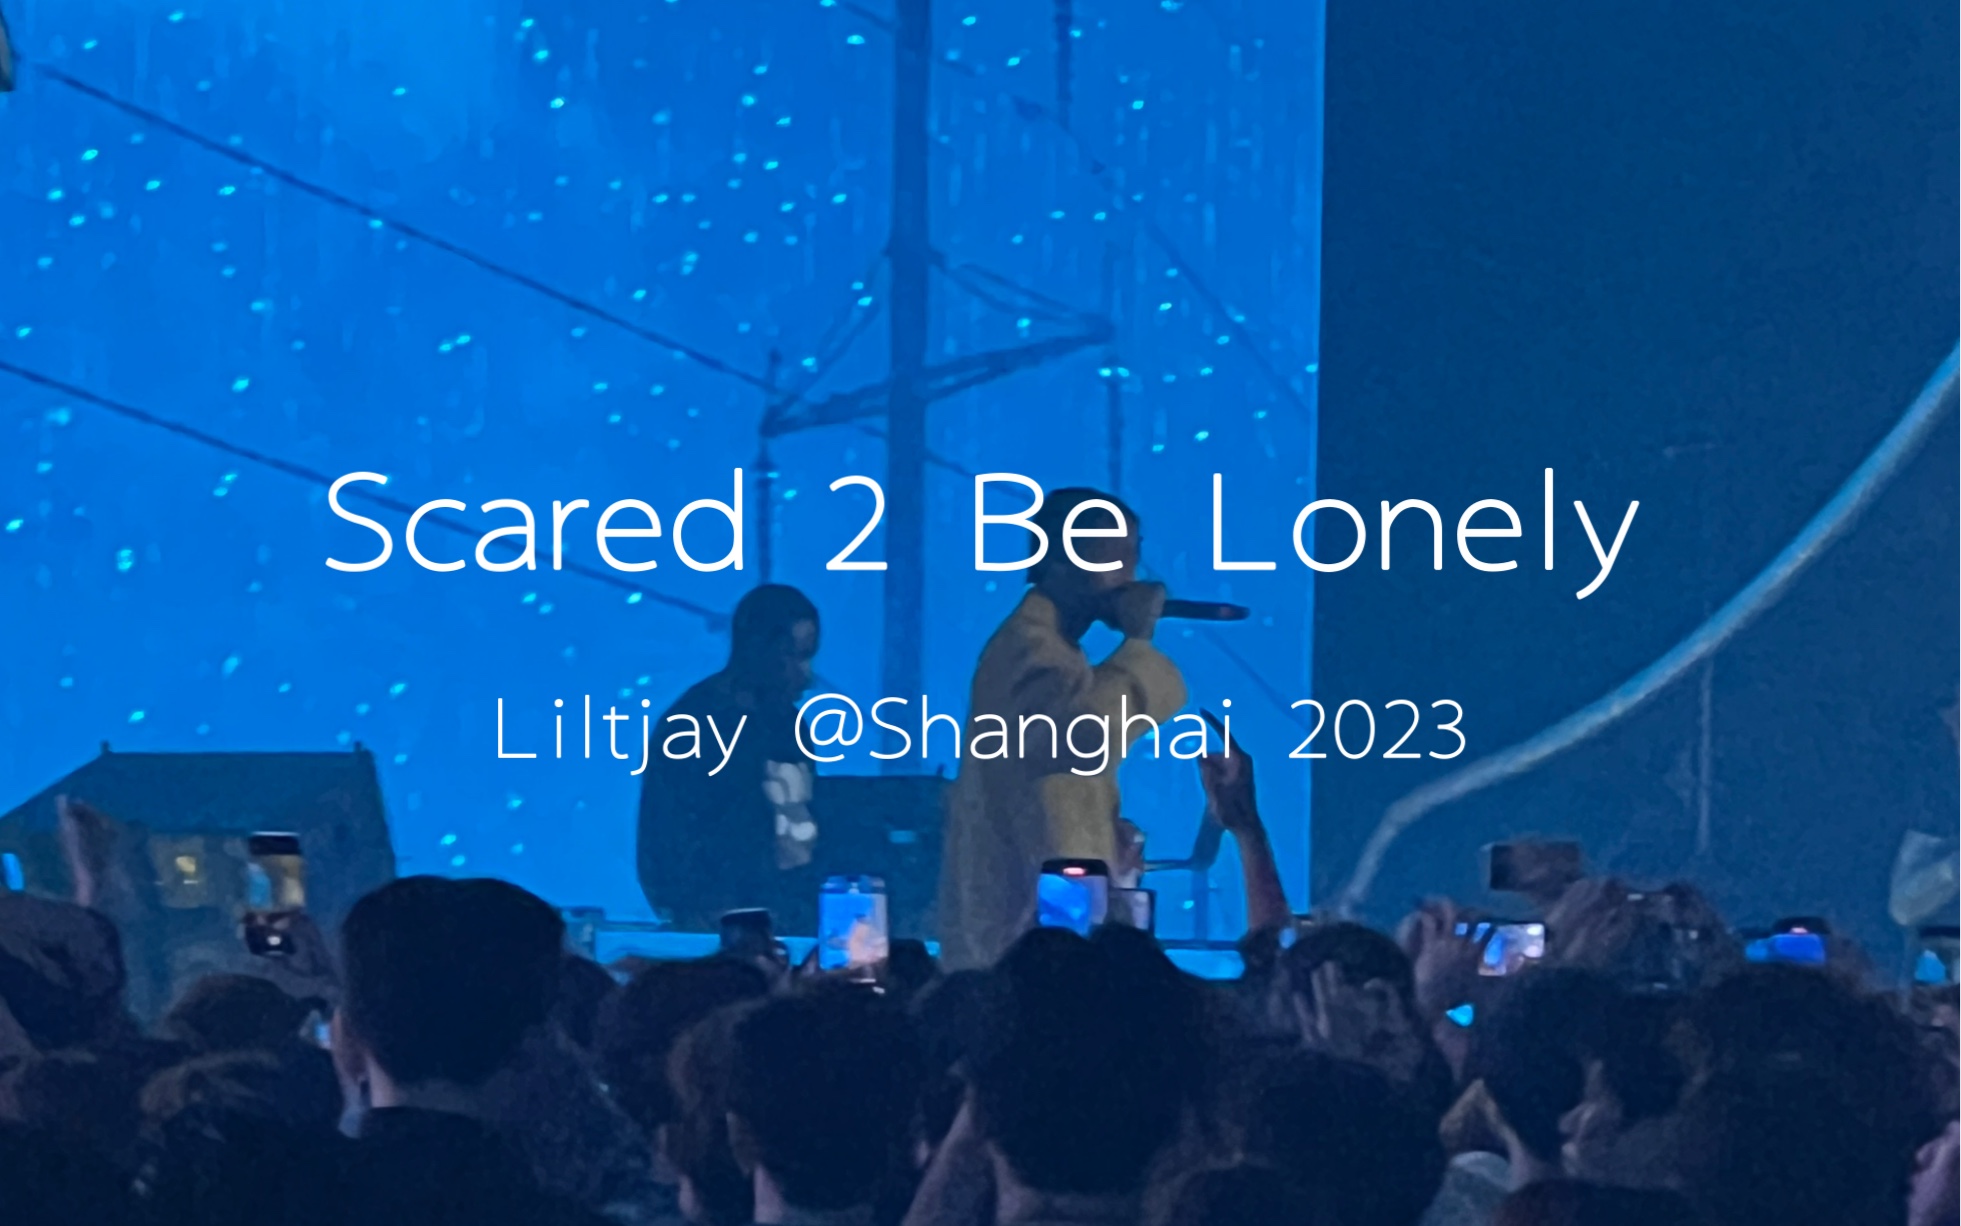 【全场合唱】Scared 2 Be Lonely - Liltjay 完整中国巡演上海站现场2023